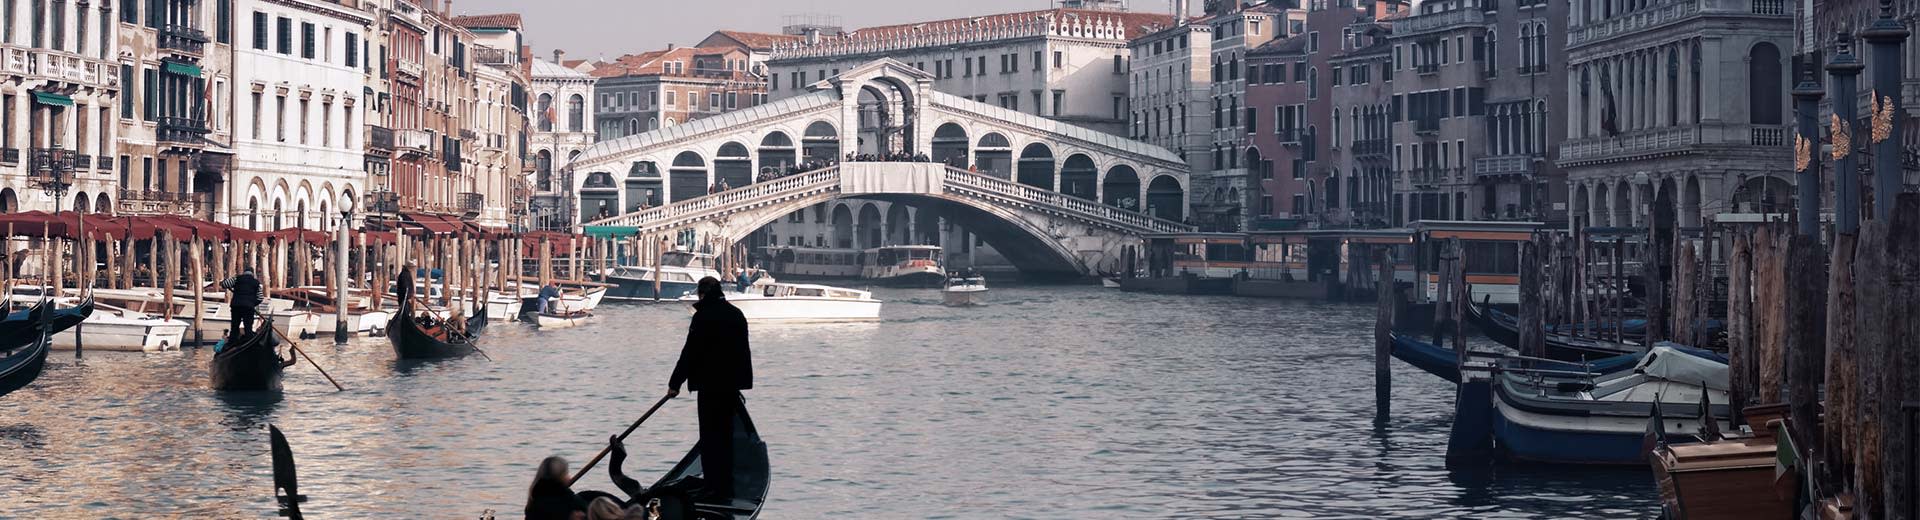 Las vías fluviales de Venecia están llenas de góndolas y sus pasajeros, mientras que en el fondo se encuentran una hermosa arquitectura.